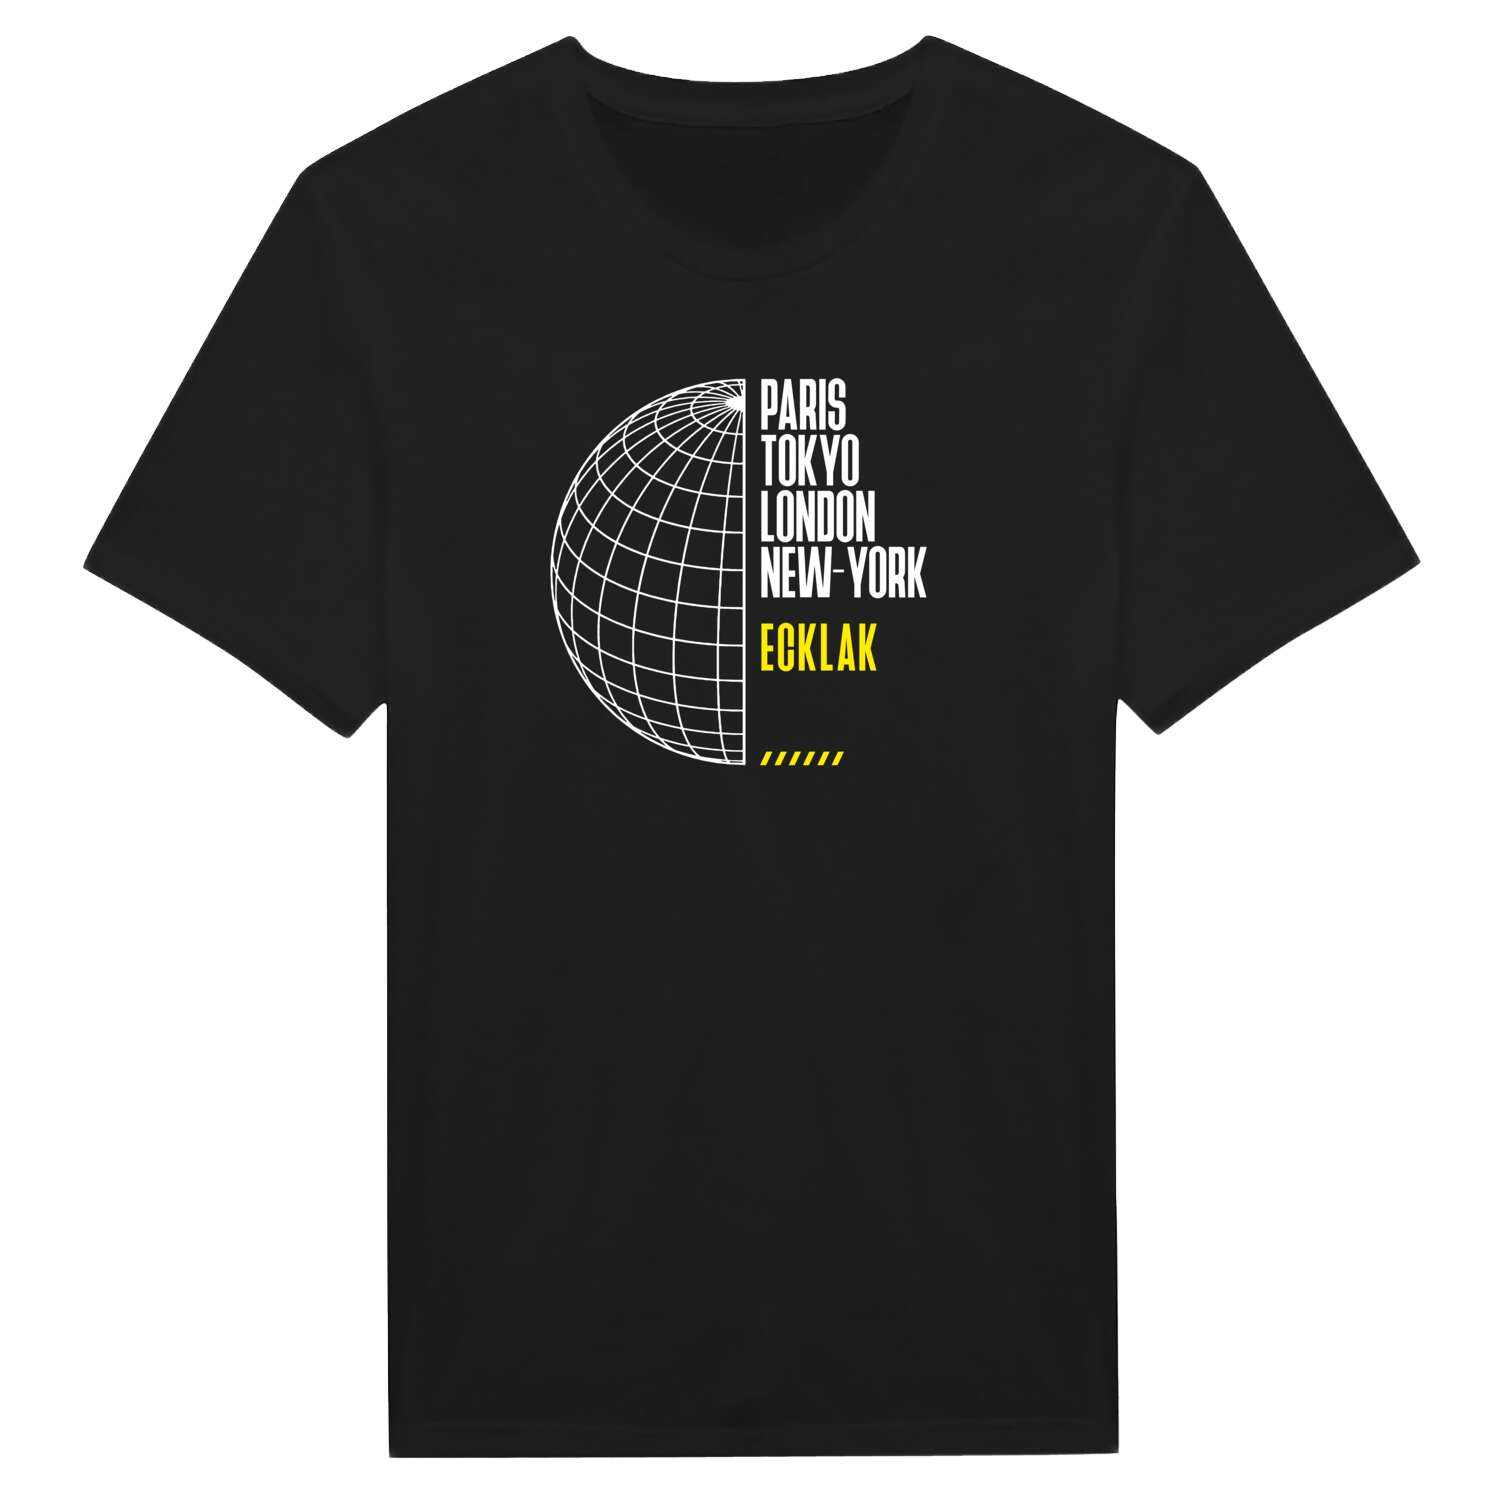 Ecklak T-Shirt »Paris Tokyo London«